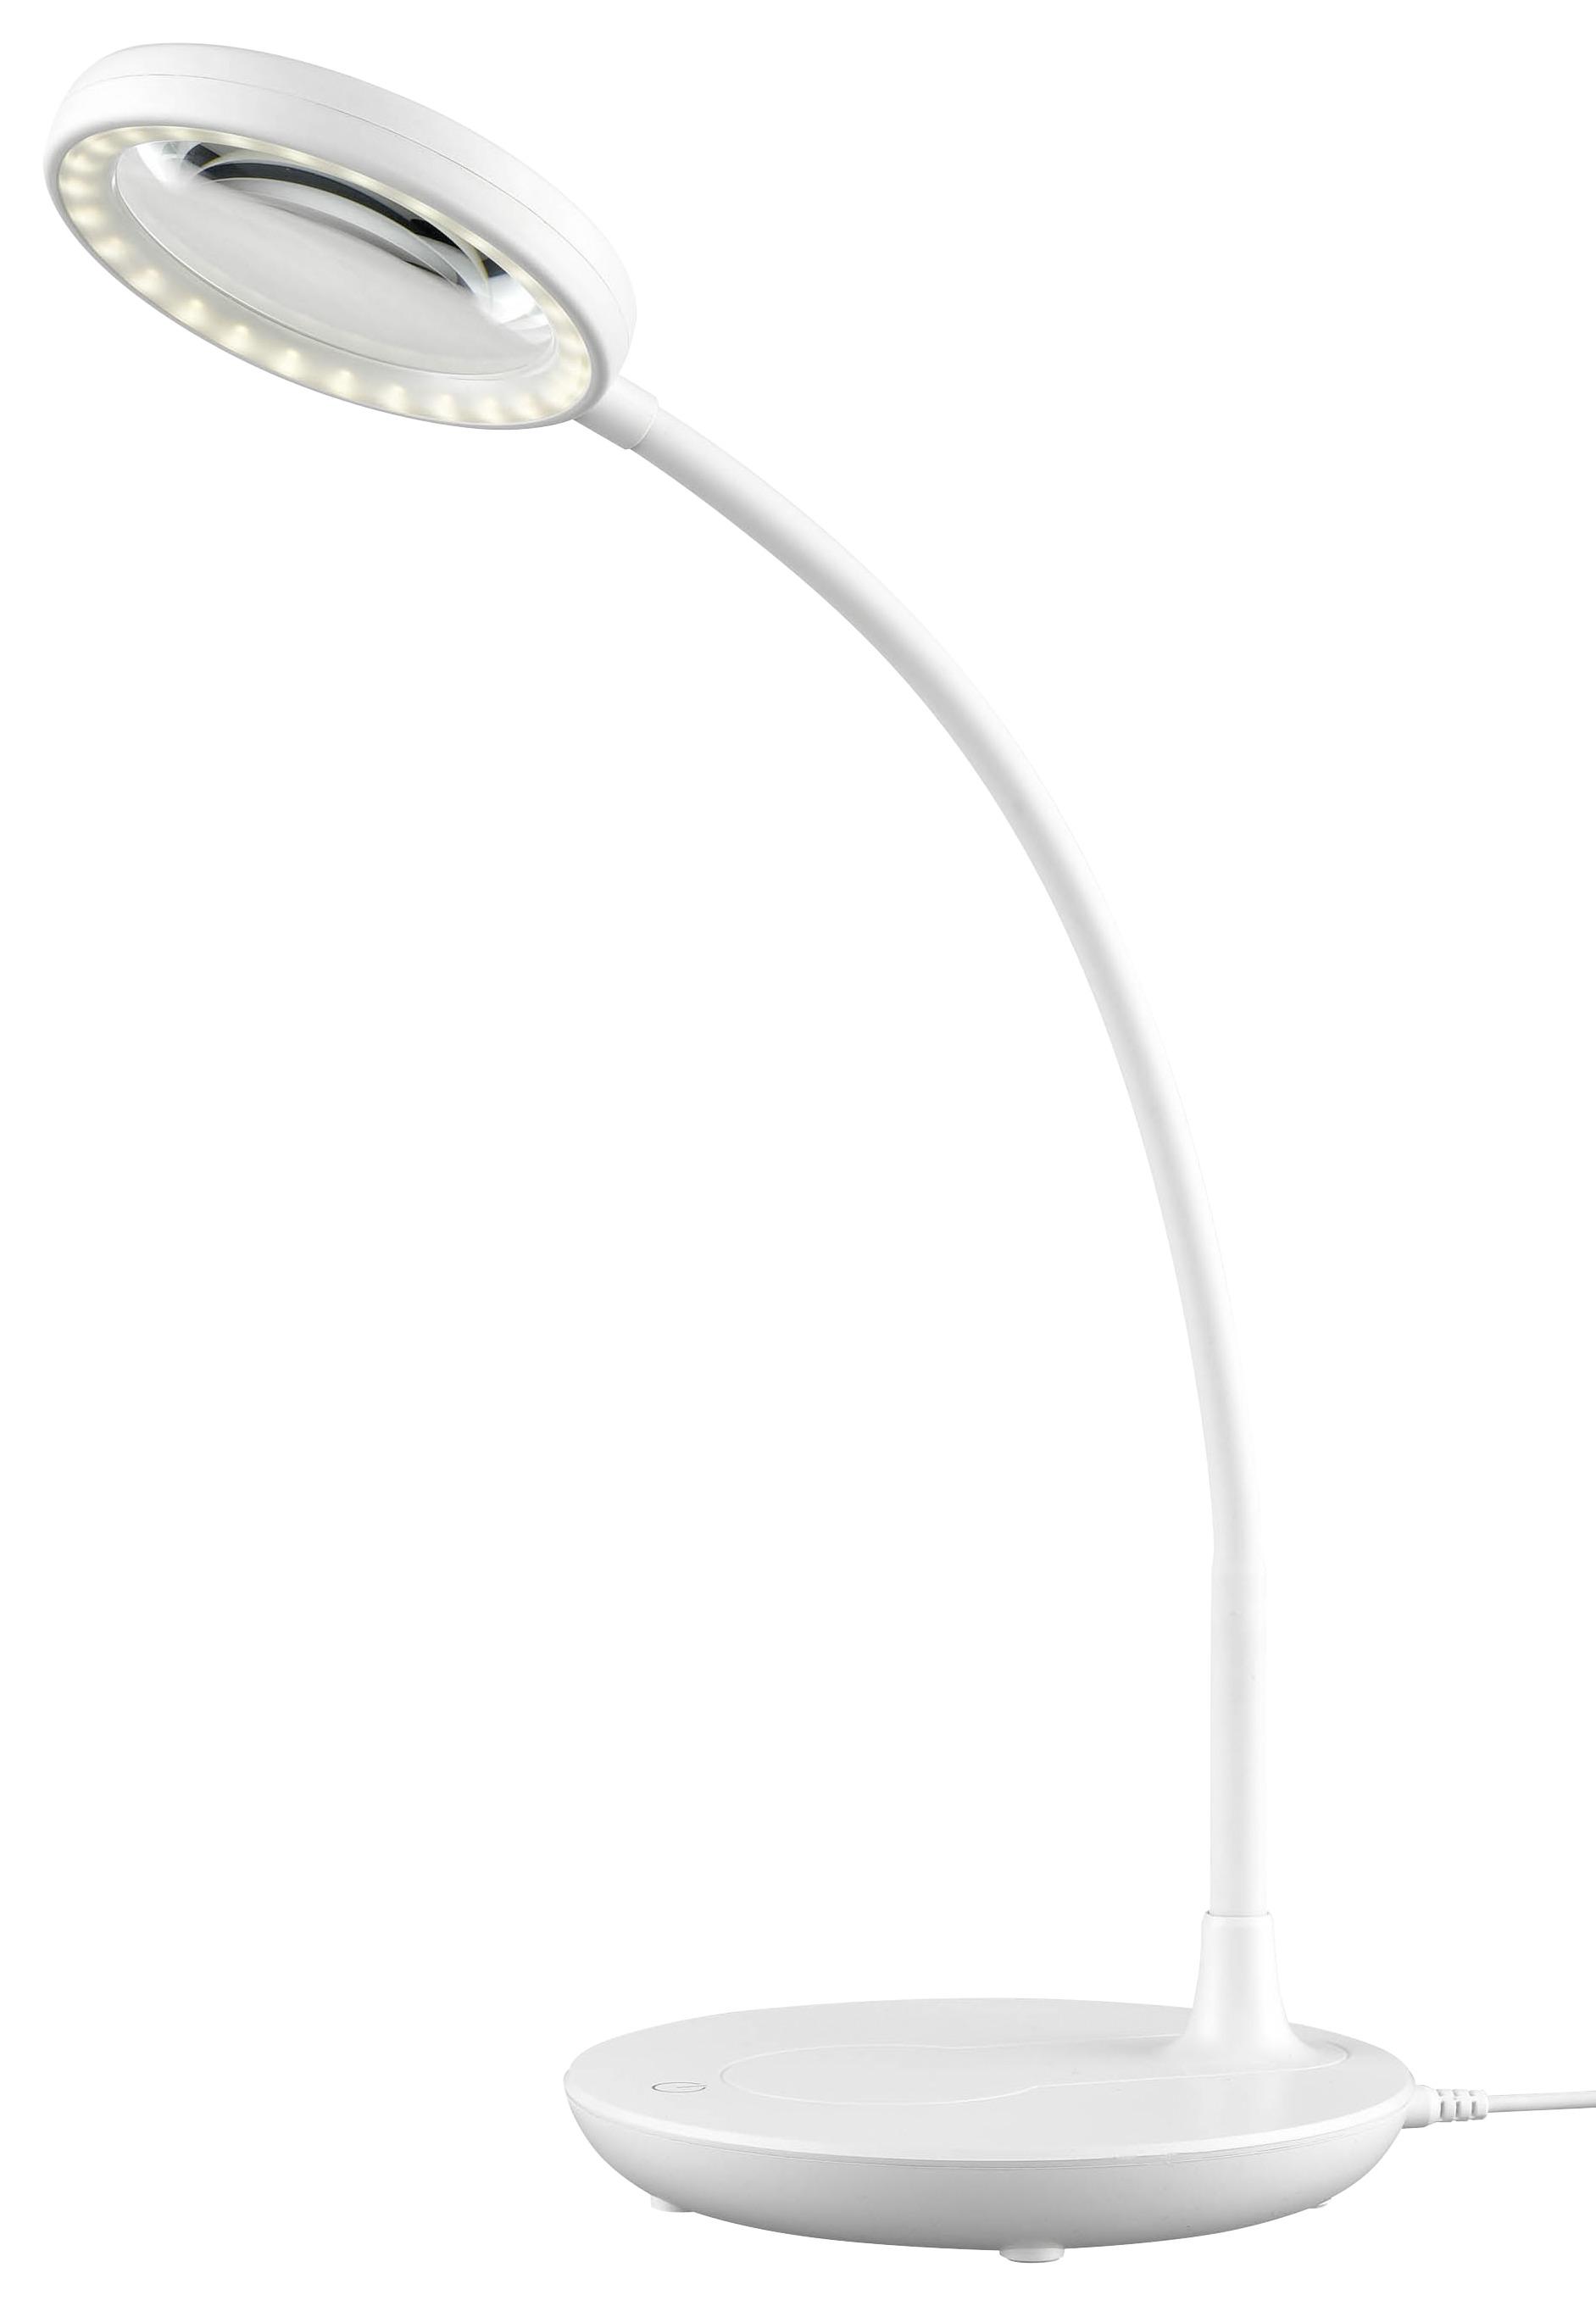 LED-Schreibtischleuchte Lupop max. 5 Watt - Weiß, ROMANTIK / LANDHAUS, Kunststoff (28/52cm) - Modern Living